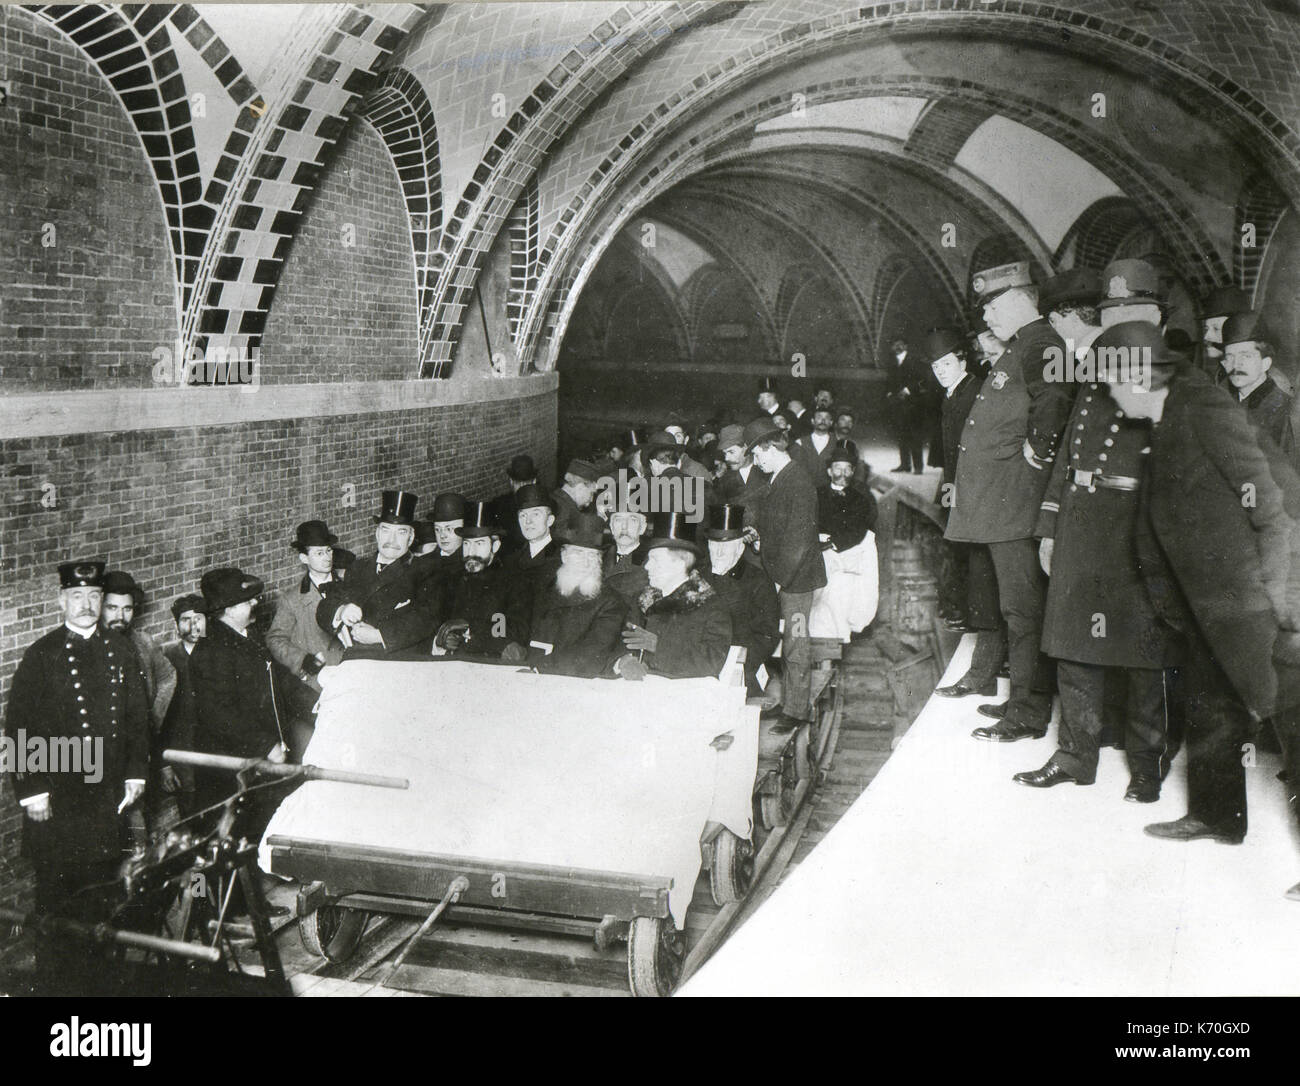 Oktober 27, 1904, New York City - die erste U-Bahn, wenn geöffnet, mit kommunalen Beamten und zivilen und Business Leader reiten auf den ersten Zug. Zu dieser Zeit war die U-Bahn für 21 Kilometer verlängert. Stockfoto